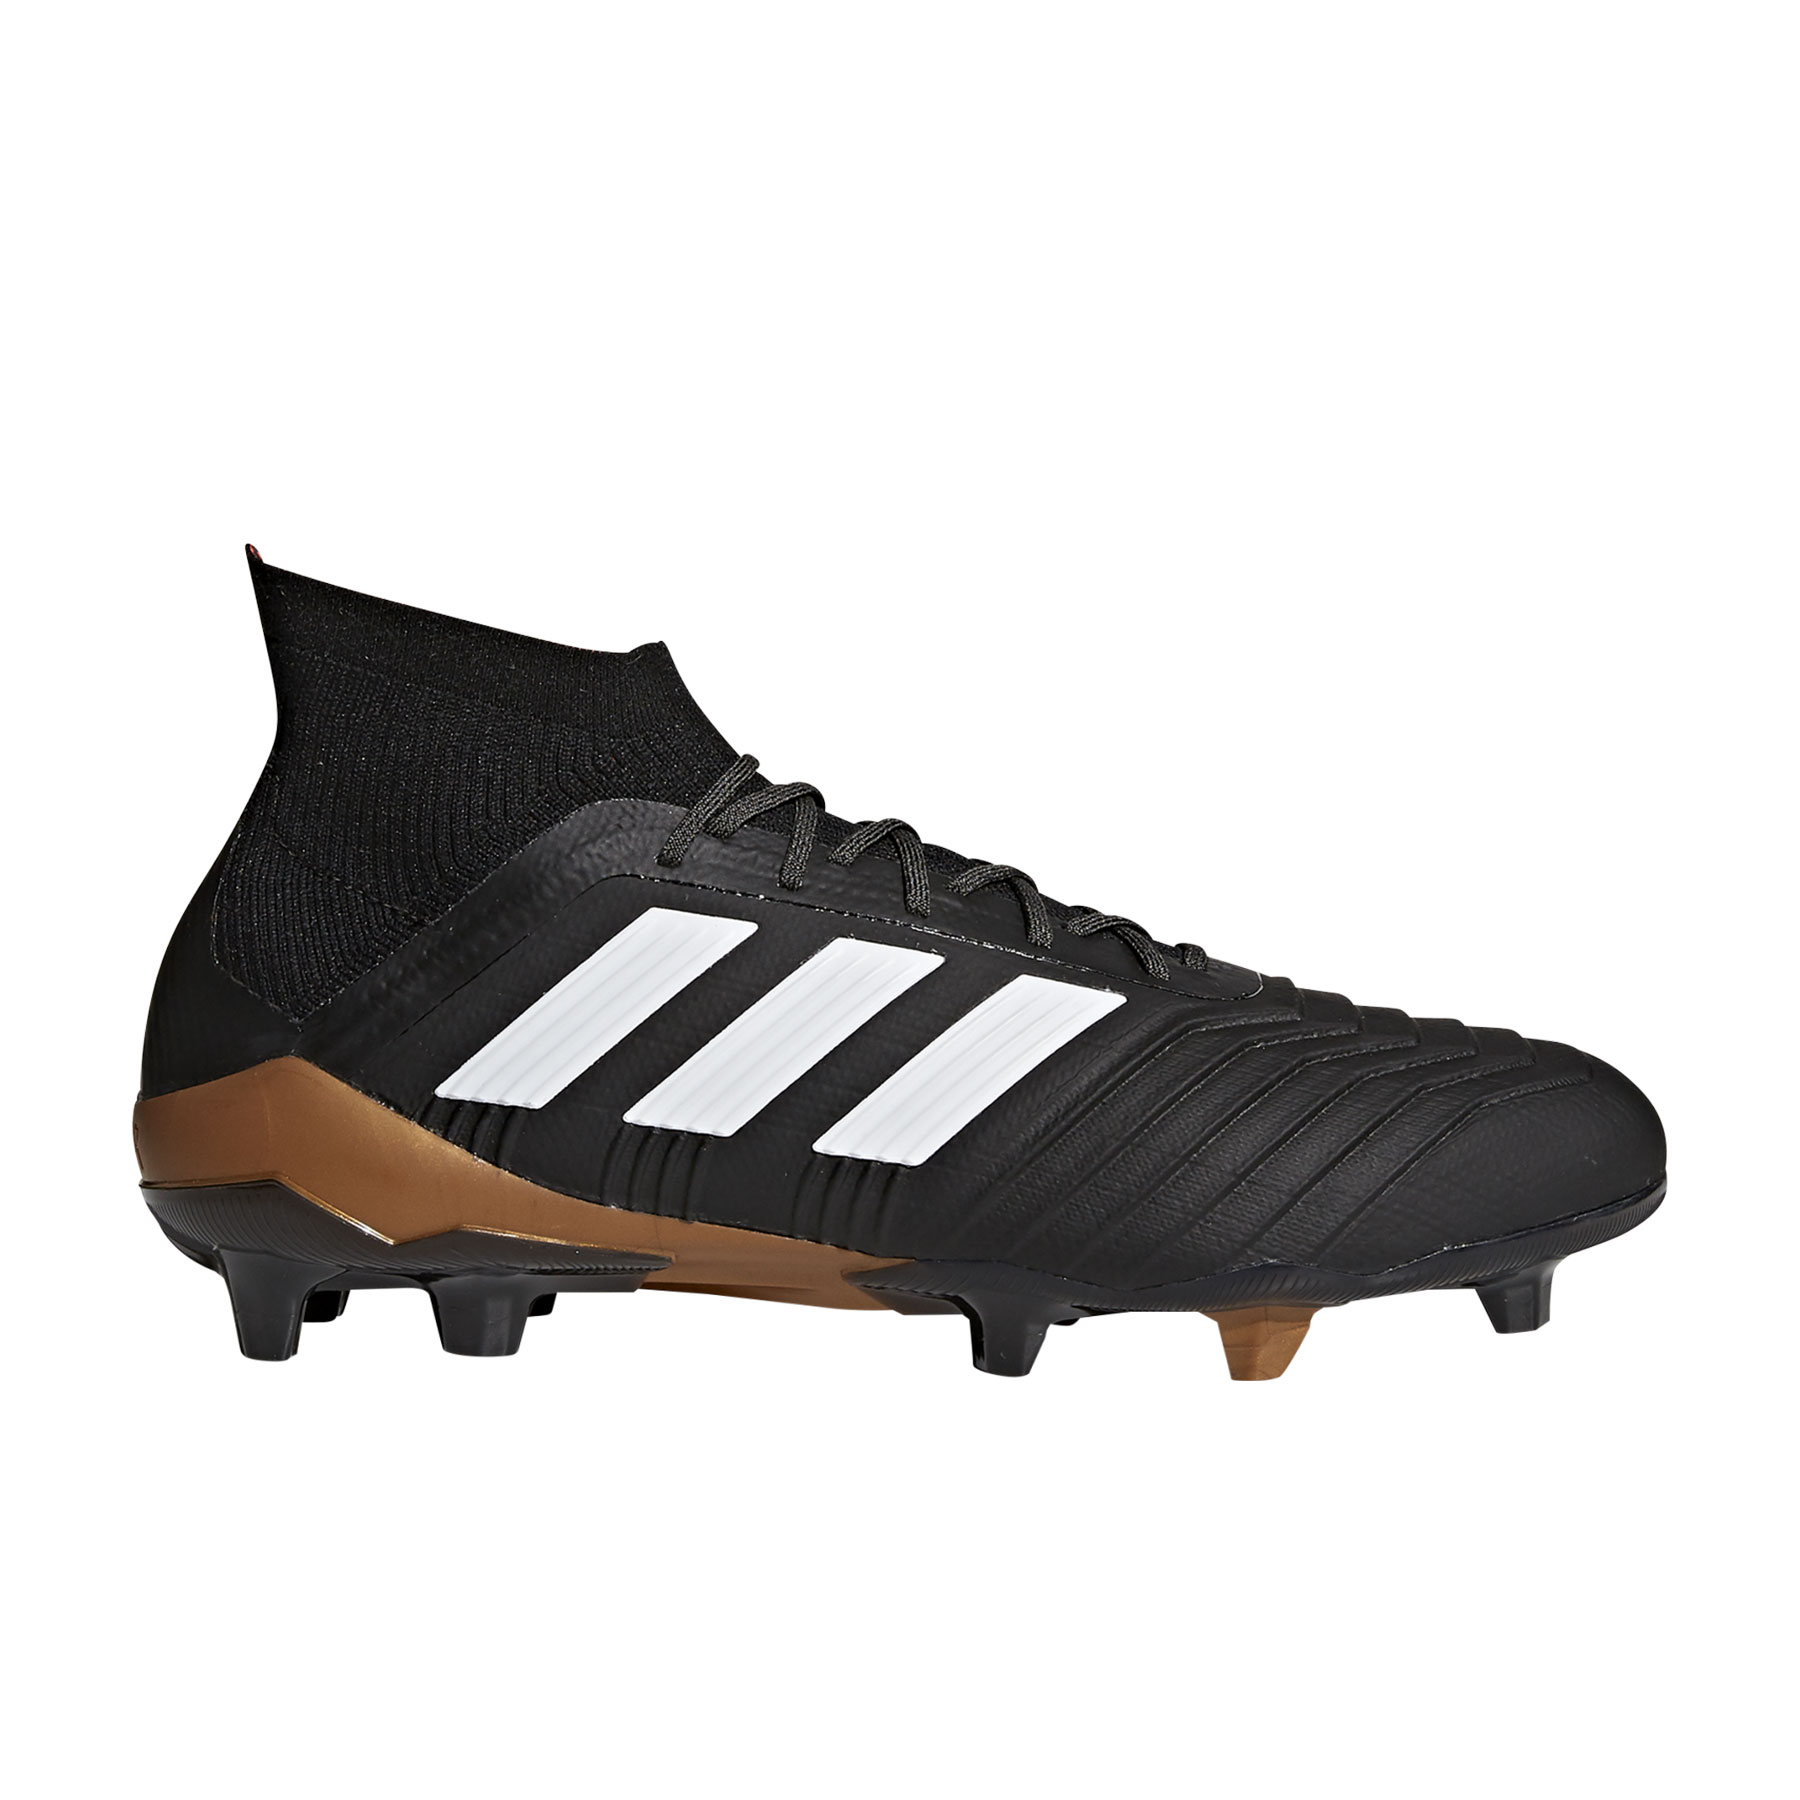 Nuova adidas Predator: il ritorno della storica scarpa da calcio adidas |  Maxinews – Il Blog di Maxi Sport